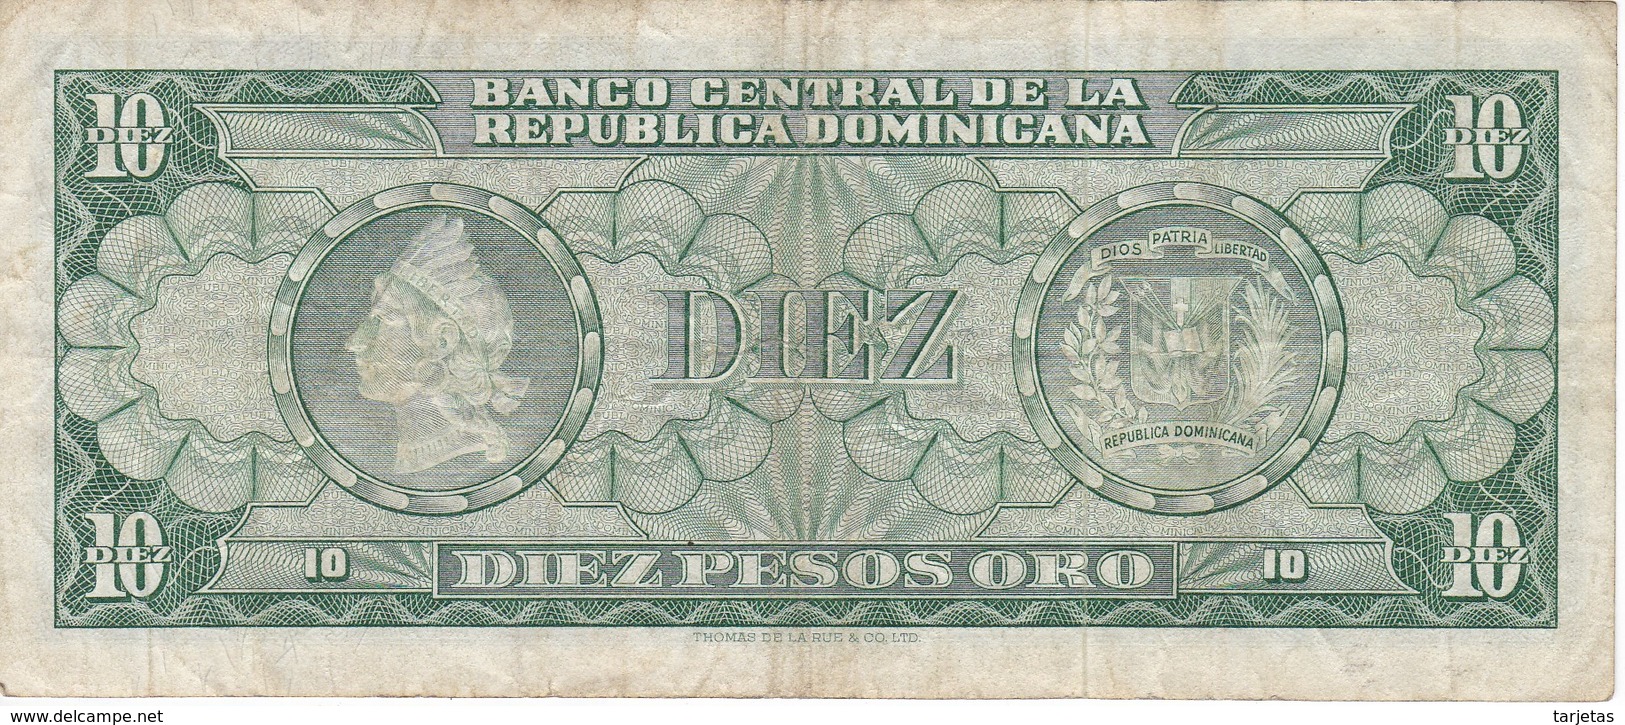 BILLETE DE REP. DOMINICANA DE 10 PESOS ORO DE LOS AÑOS 70  (BANKNOTE) - República Dominicana